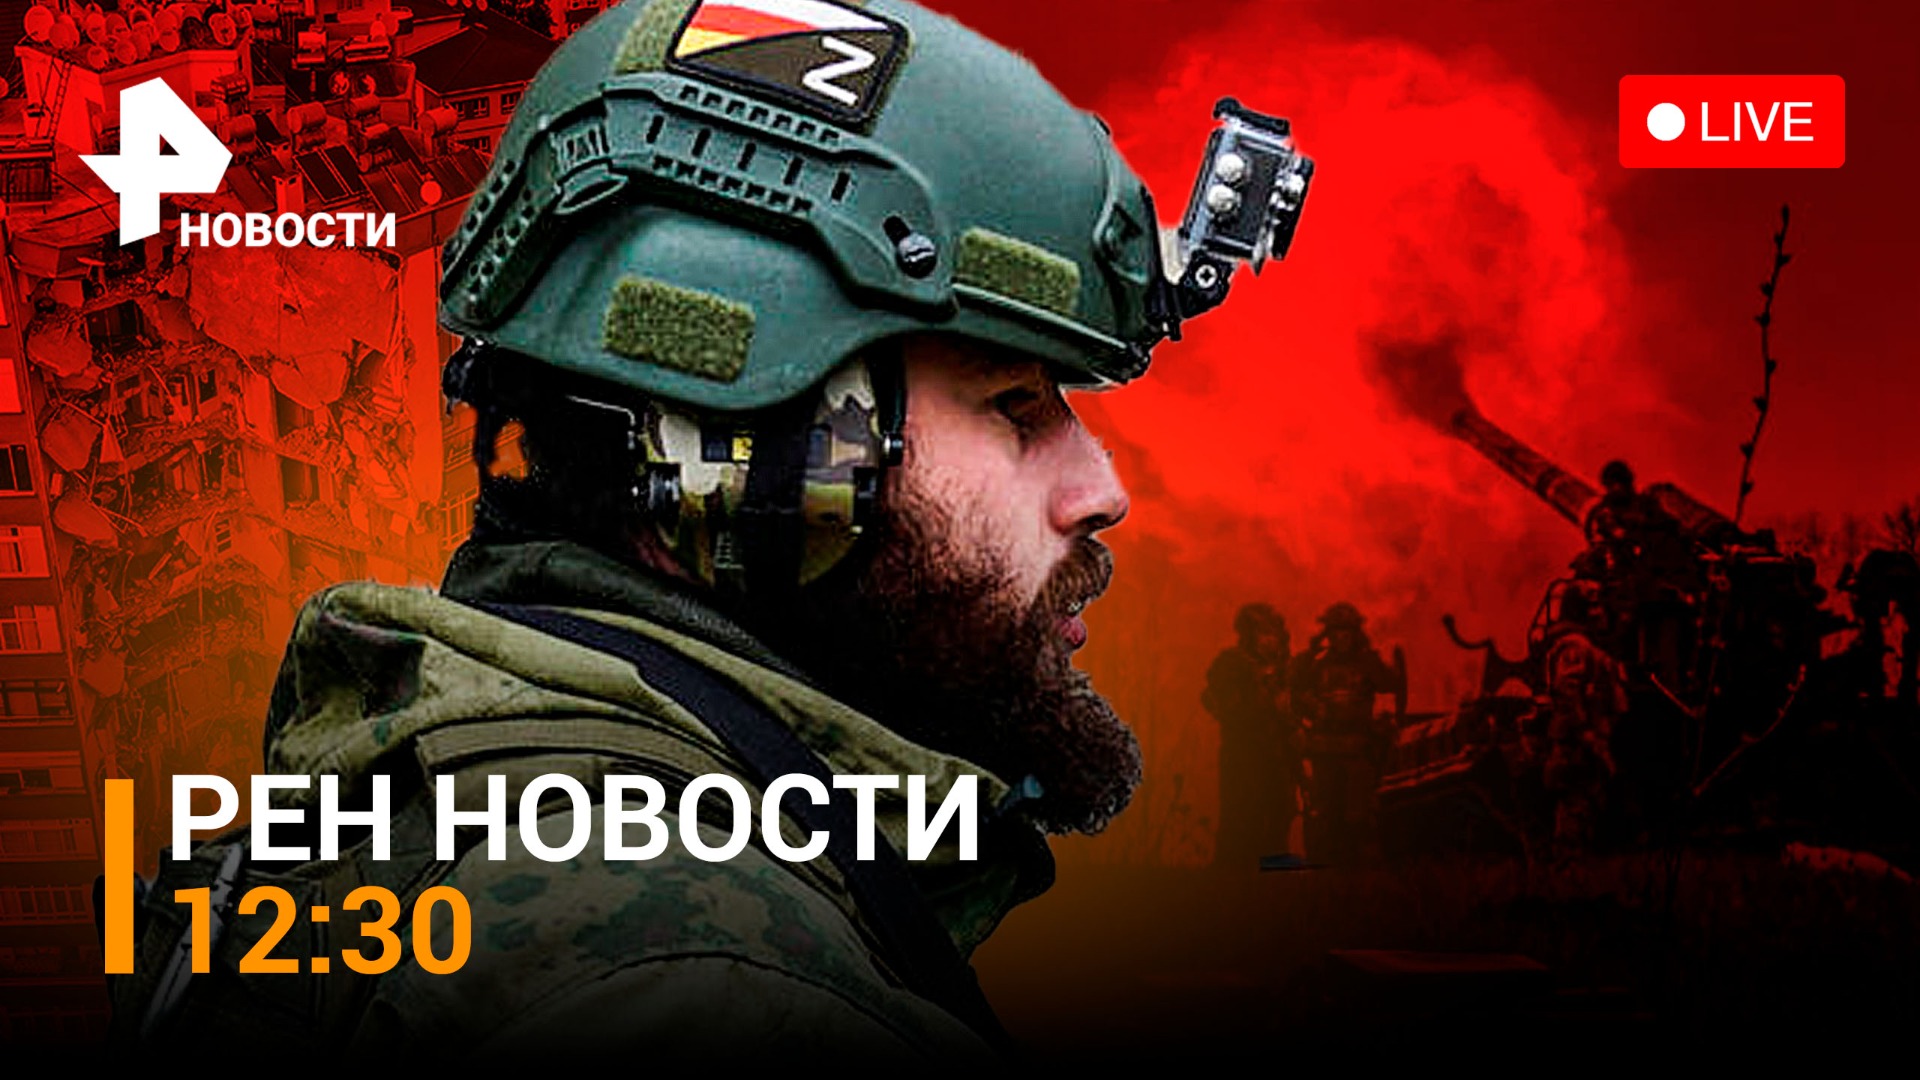 Как российские военные ведут боевые действия в районе Спорного / РЕН НОВОСТИ 12:30 